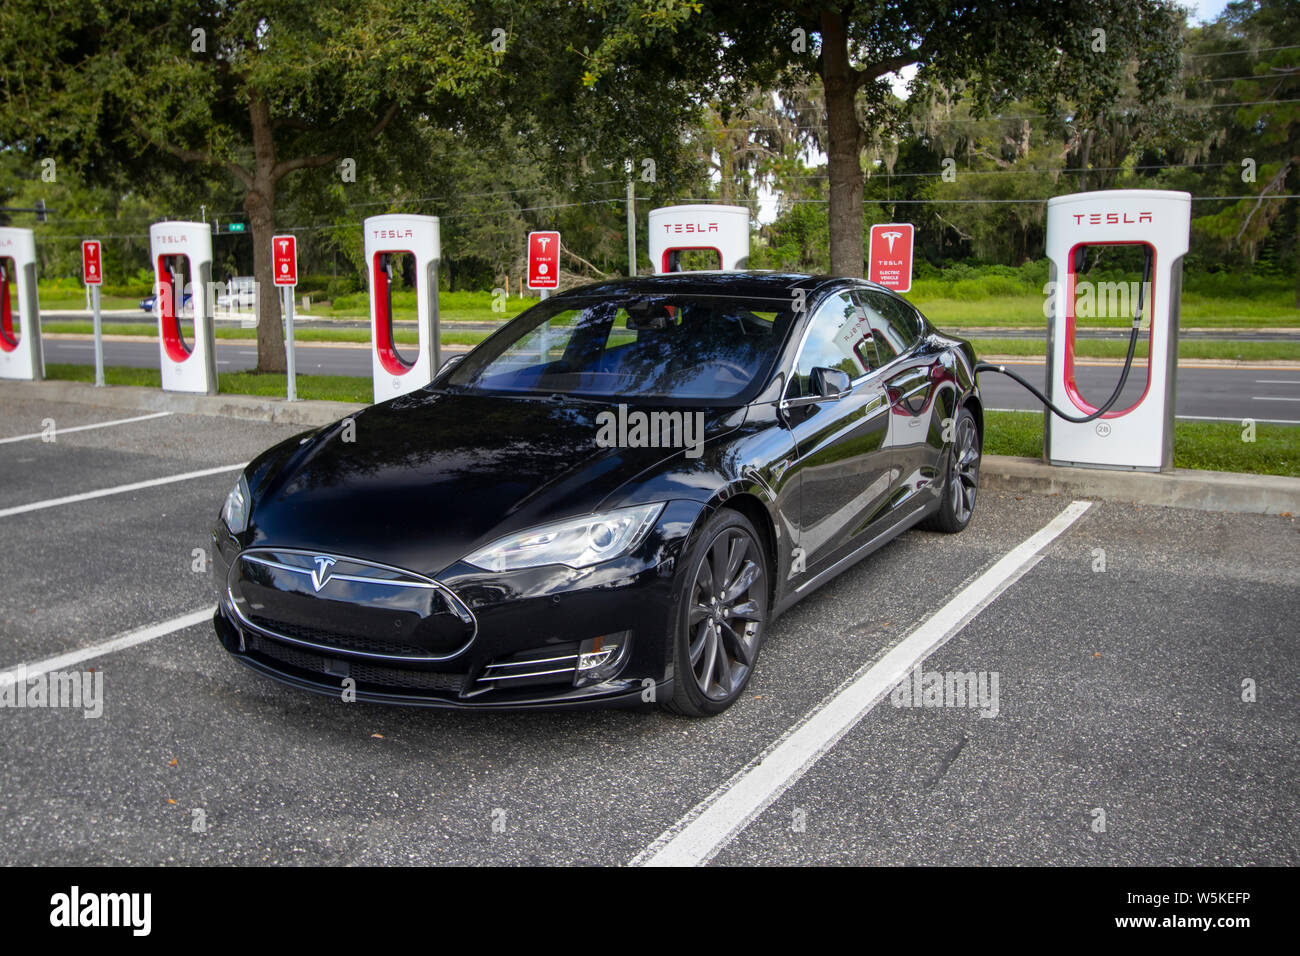 Tesla-ladestation für elektroautos in vancouver, amerika